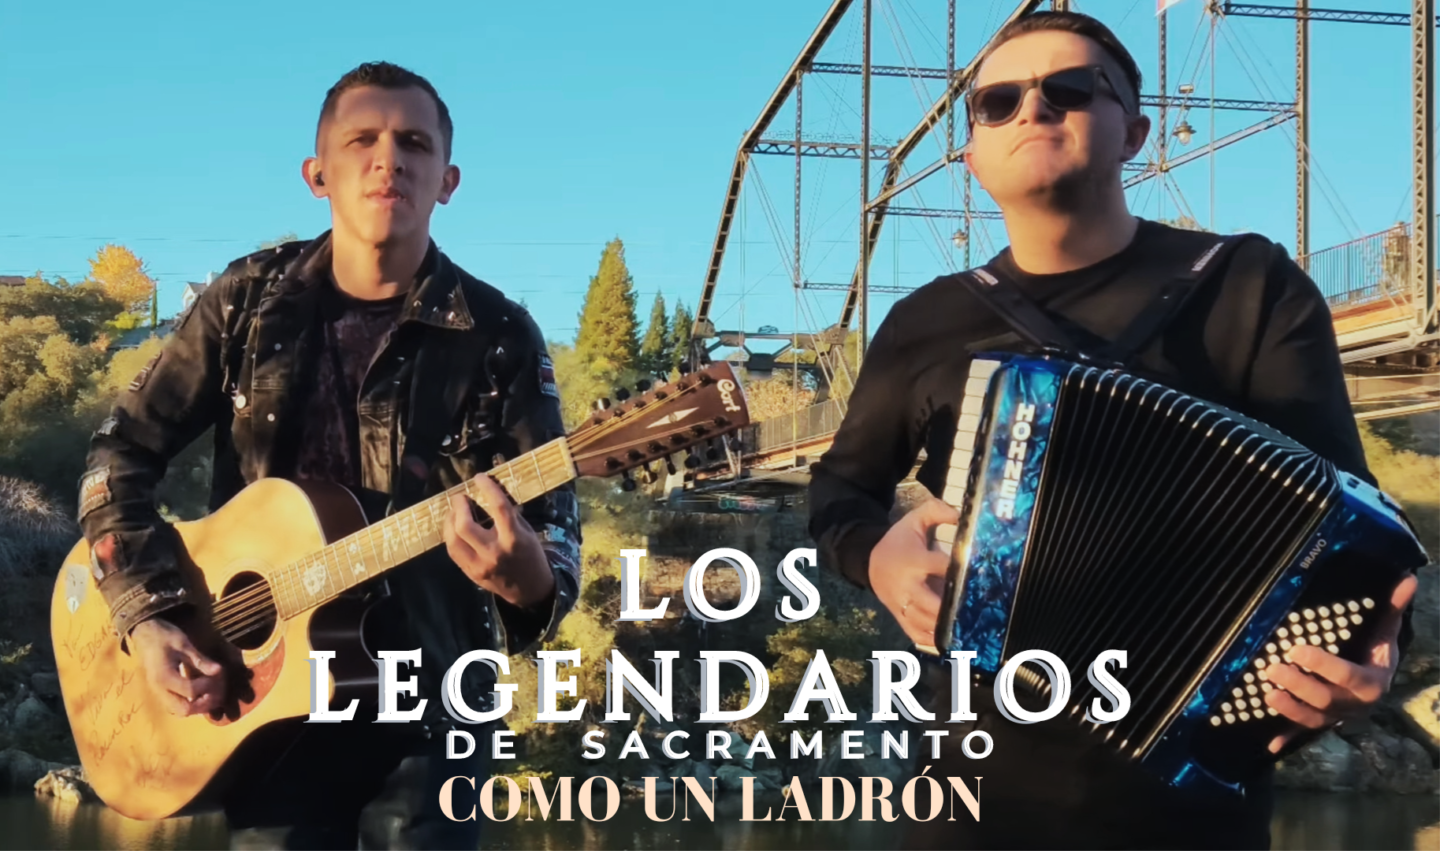 Los Legendarios